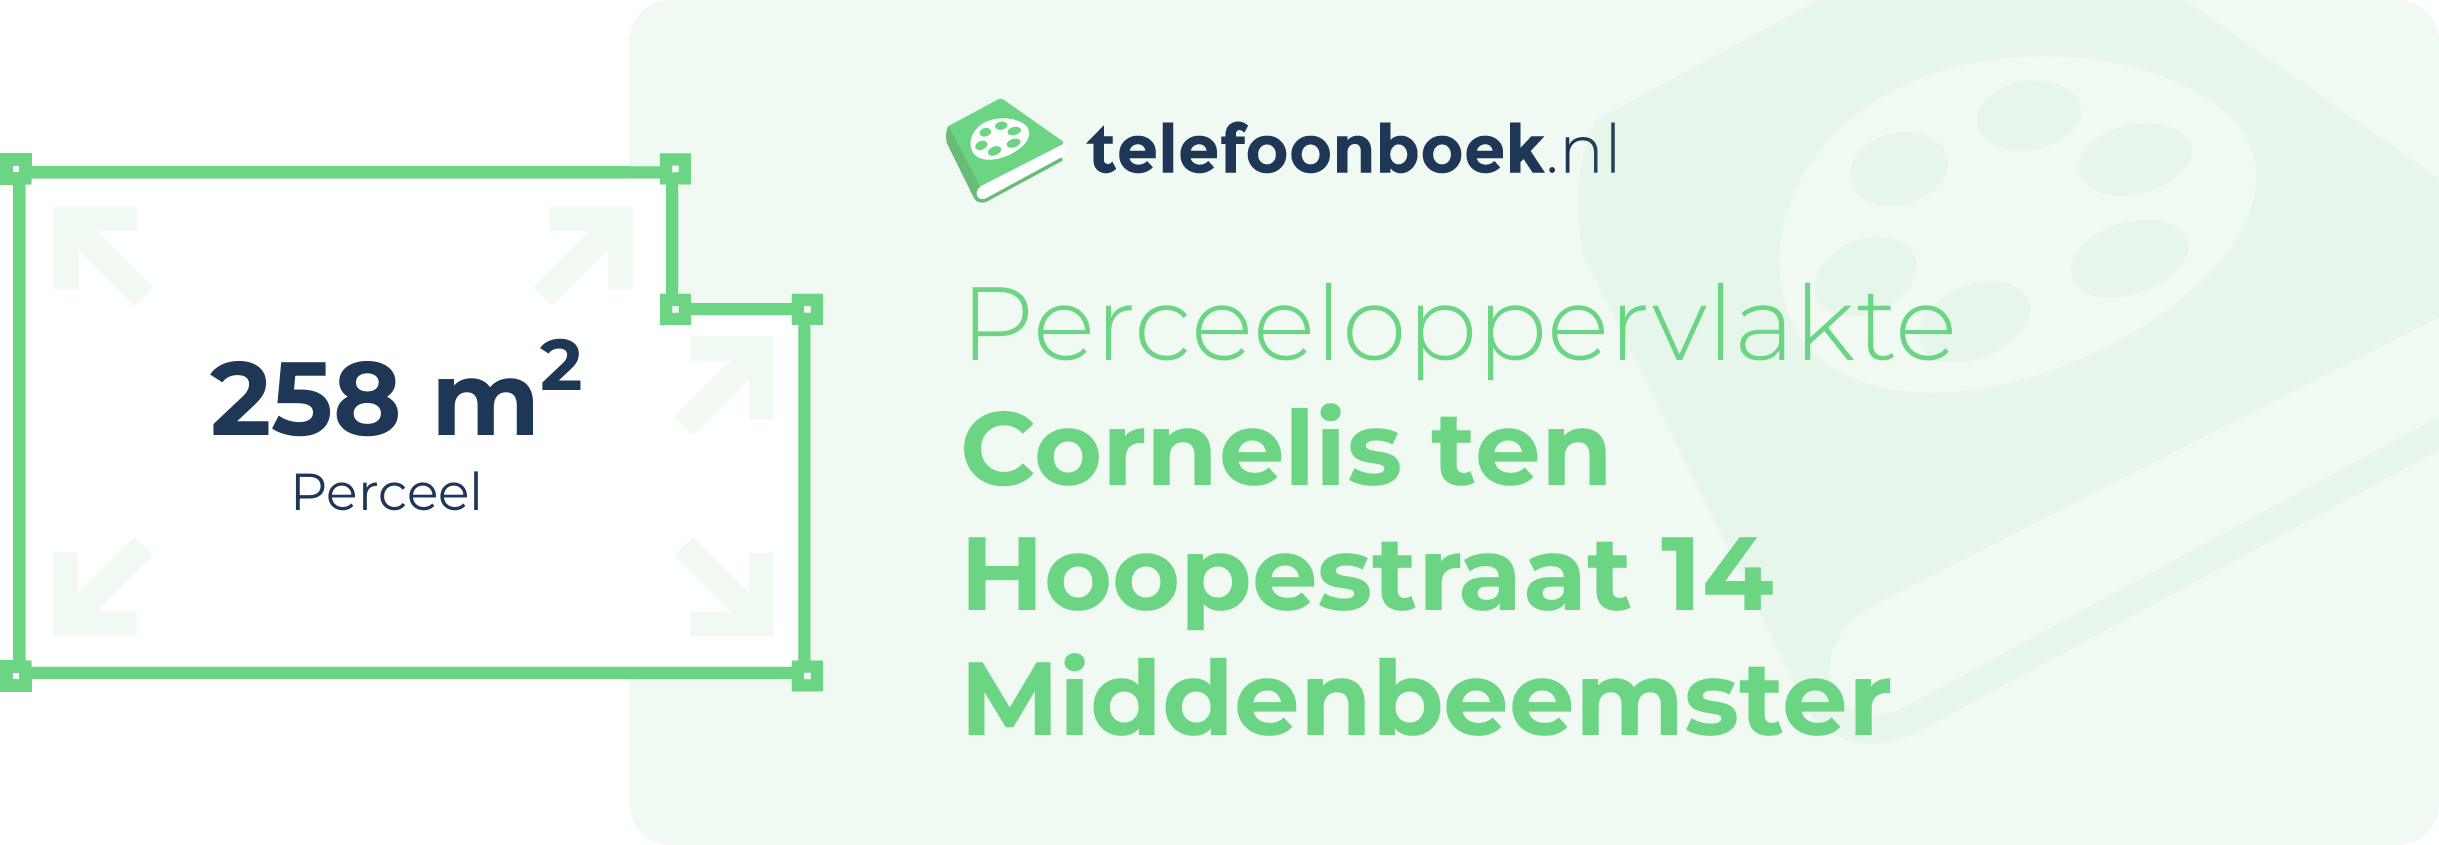 Perceeloppervlakte Cornelis Ten Hoopestraat 14 Middenbeemster